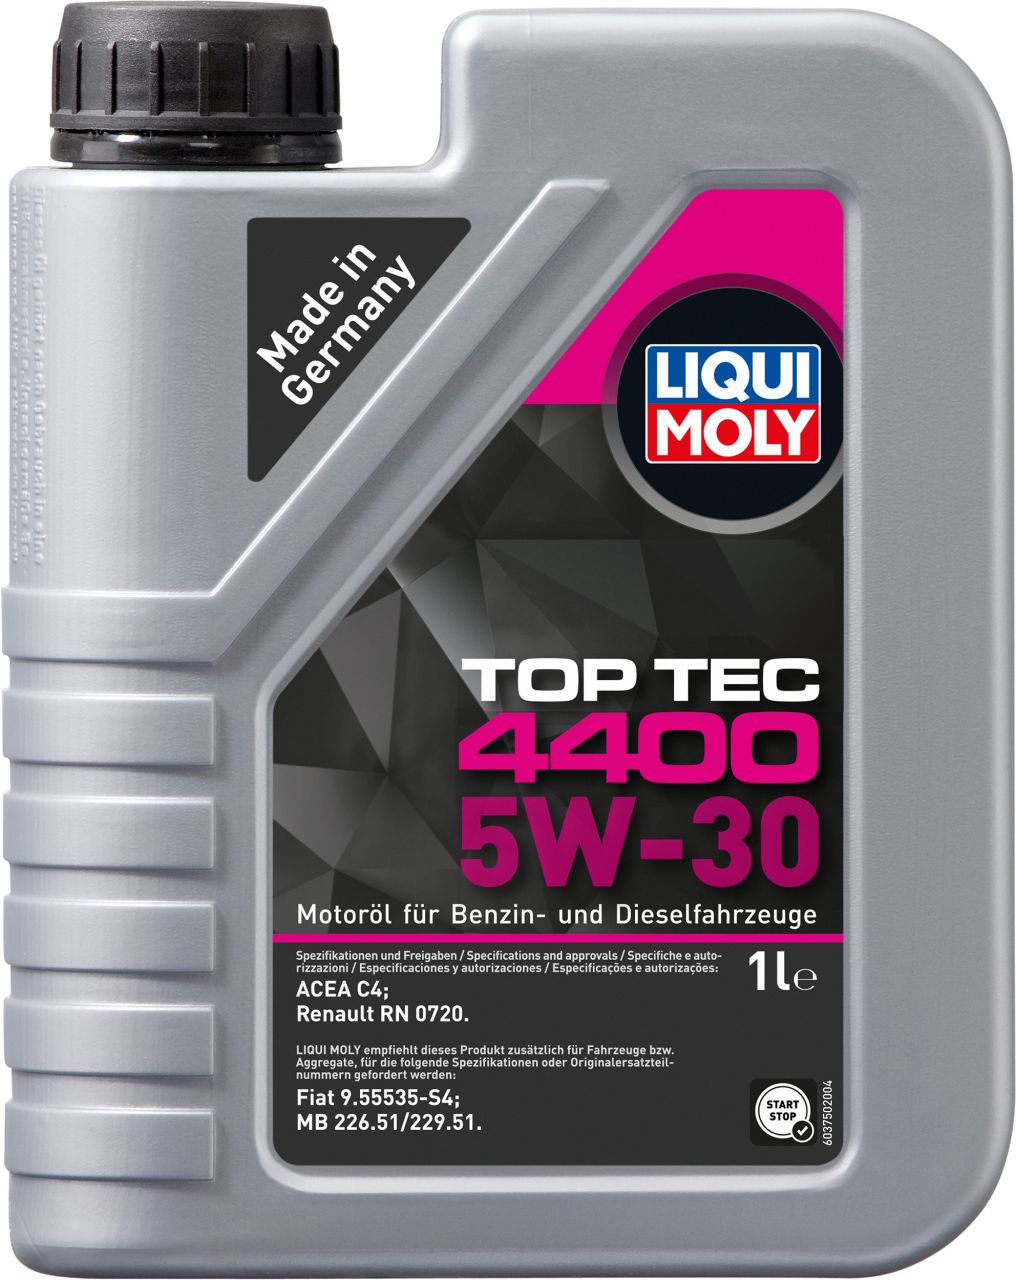 Liqui Moly Motoröl Top Tec 4400 5W-30 1 L von Liqui Moly